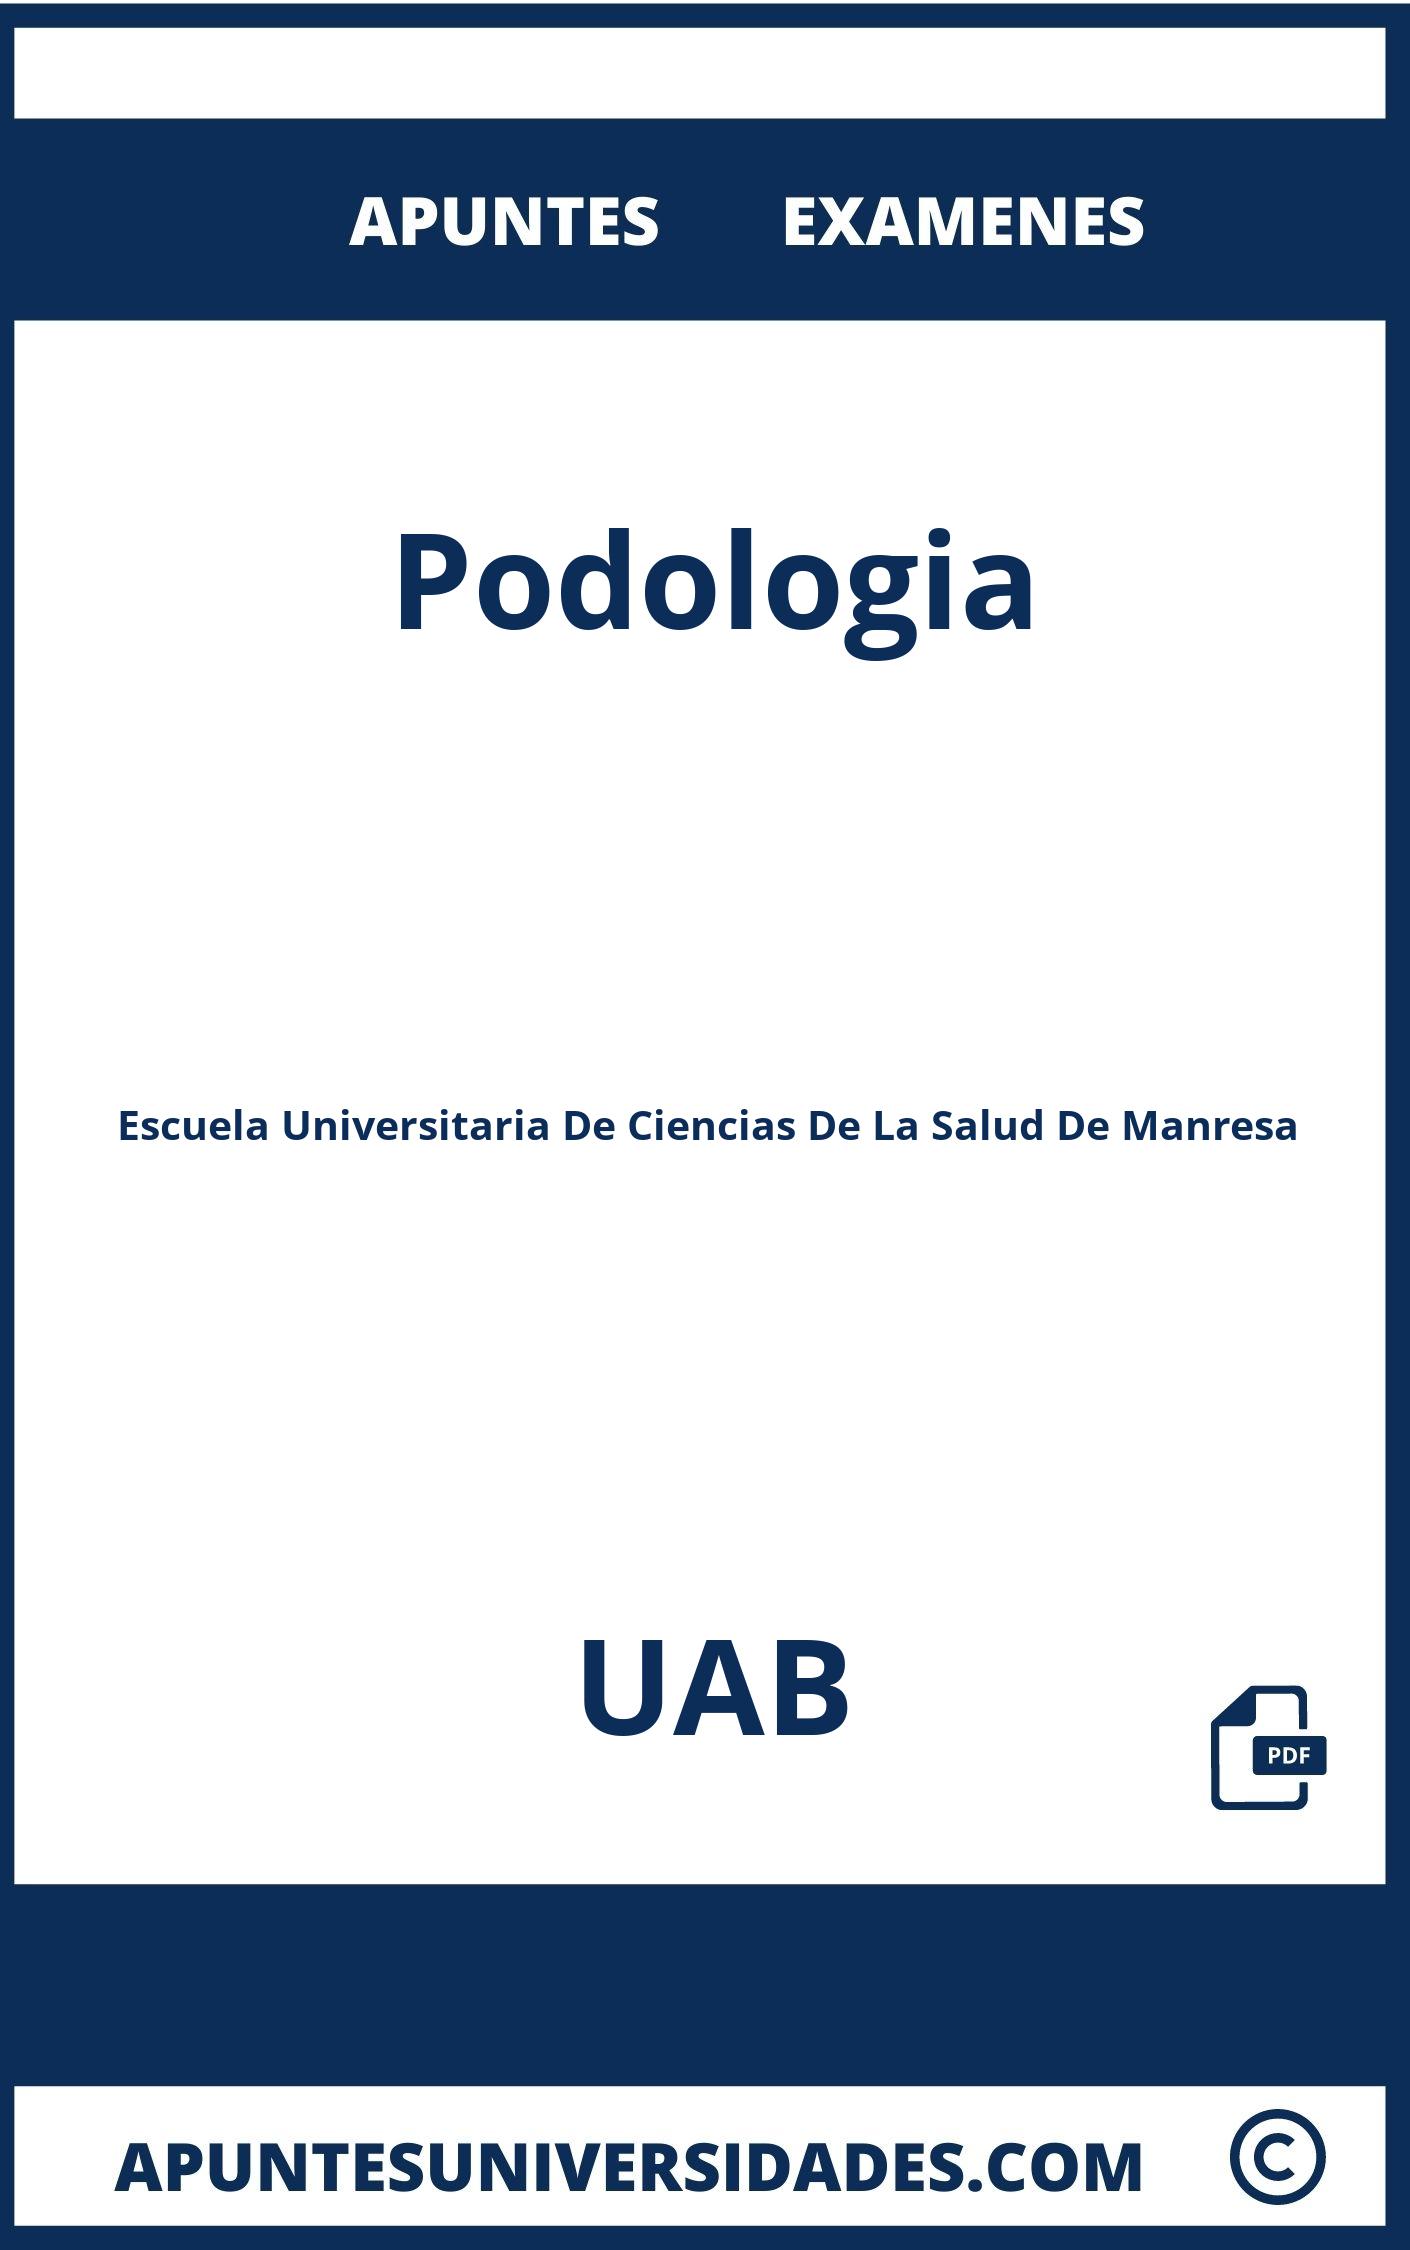 Apuntes y Examenes de Podologia UAB